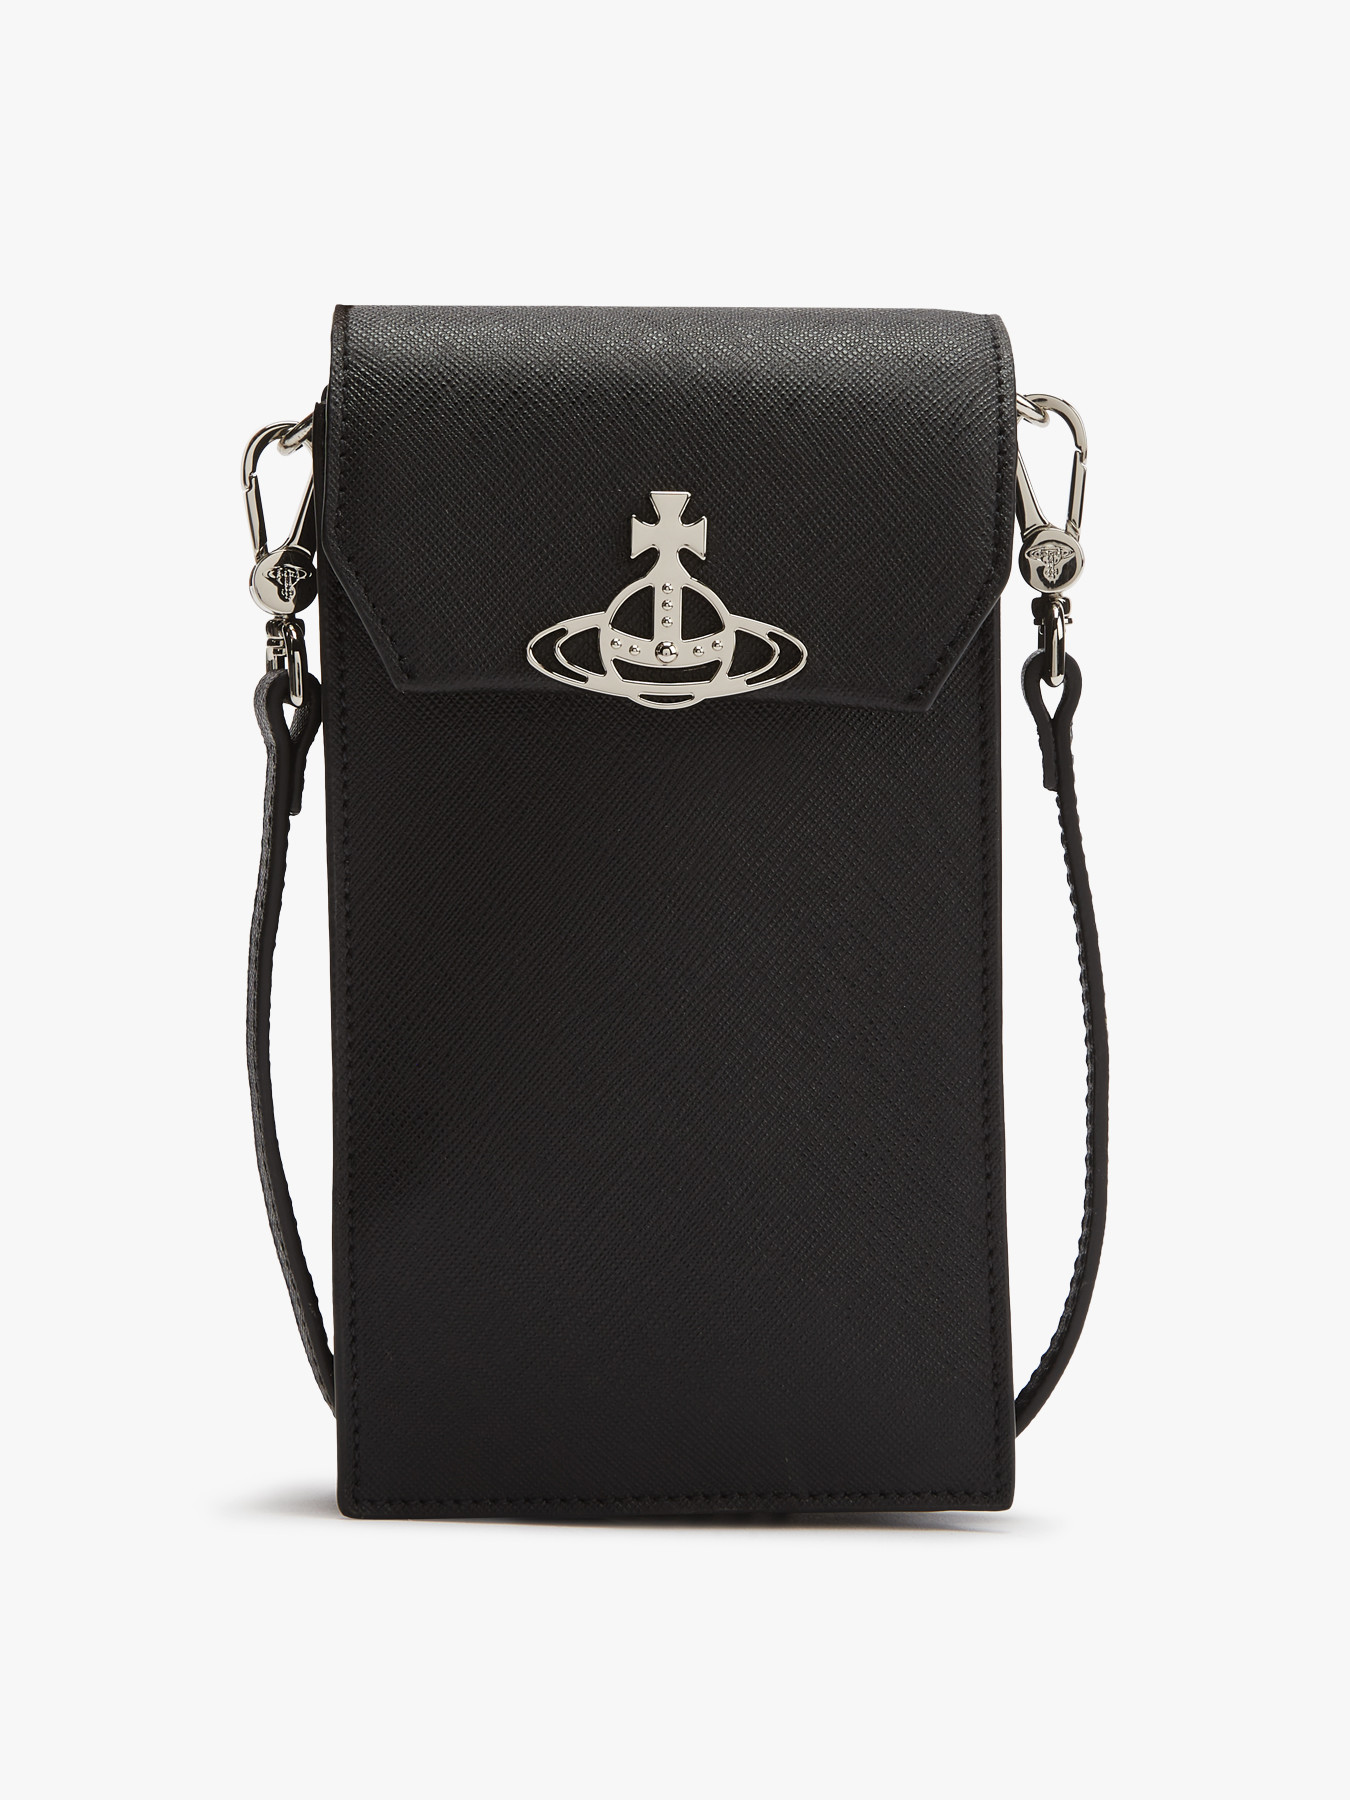 Vivienne Westwood Saffiano Phone Bag Black